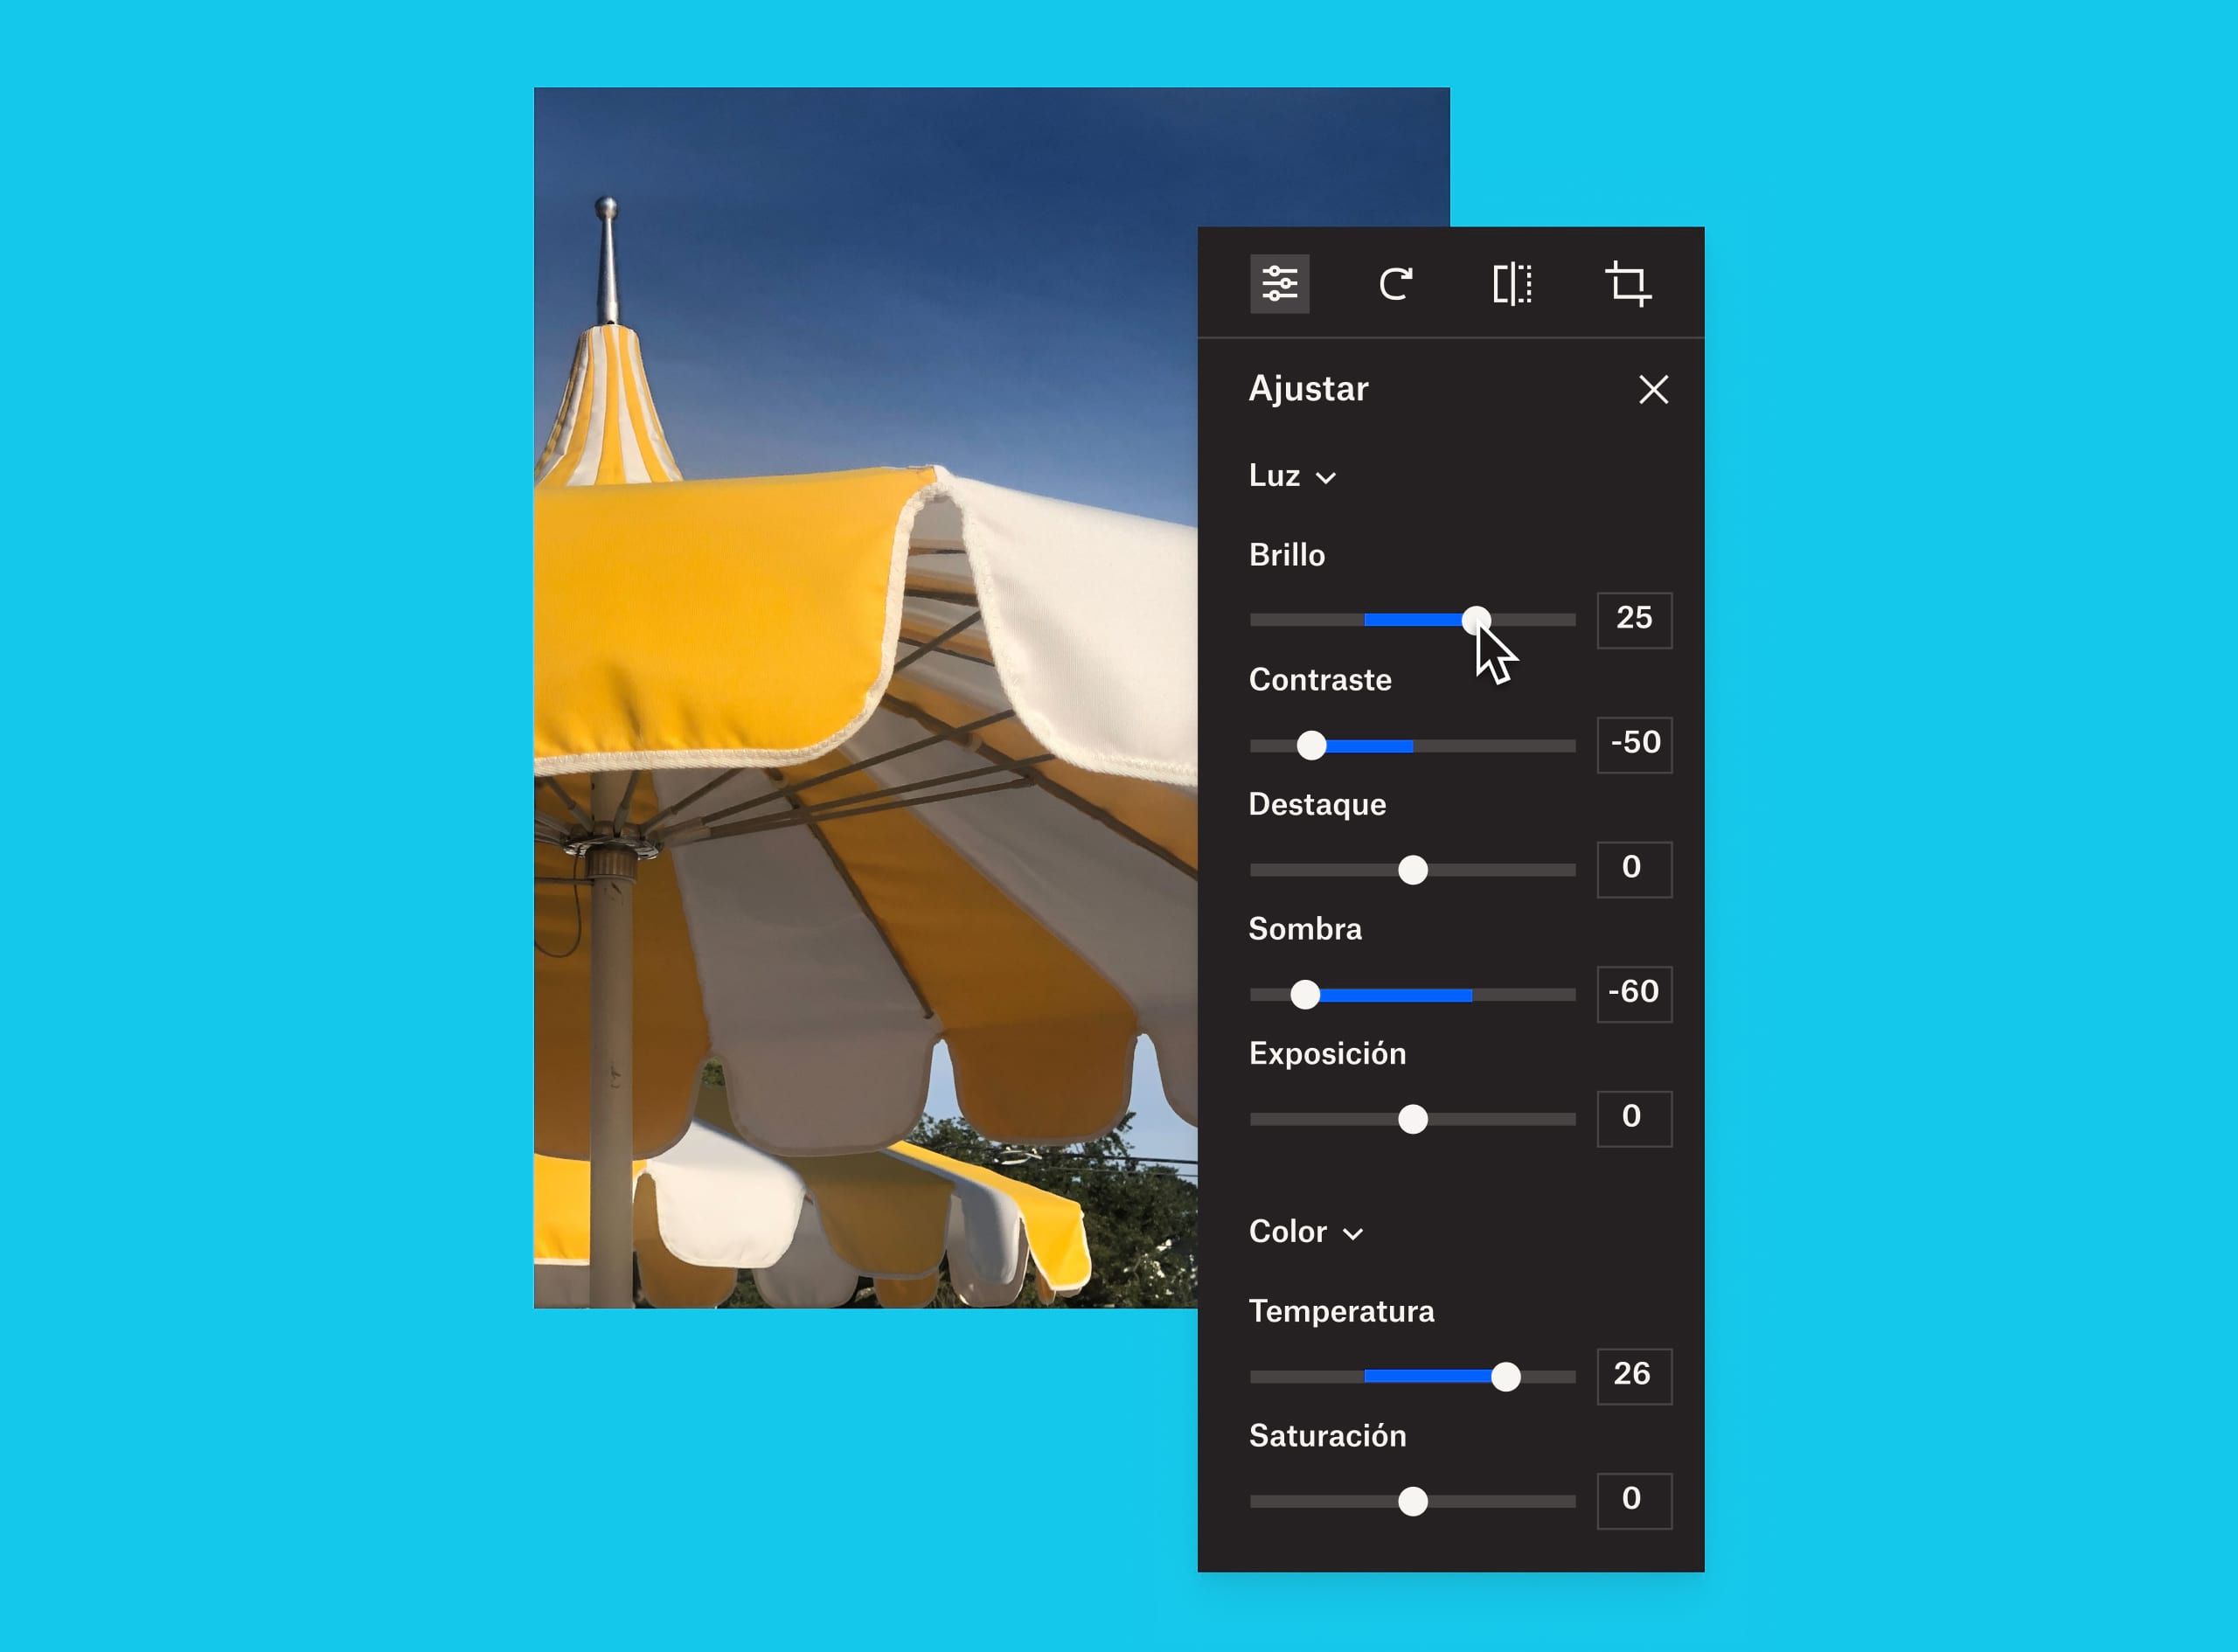 Una imagen de un paraguas amarillo y blanco con una superposición del panel de ajuste de imagen donde un usuario está cambiando el brillo de la imagen